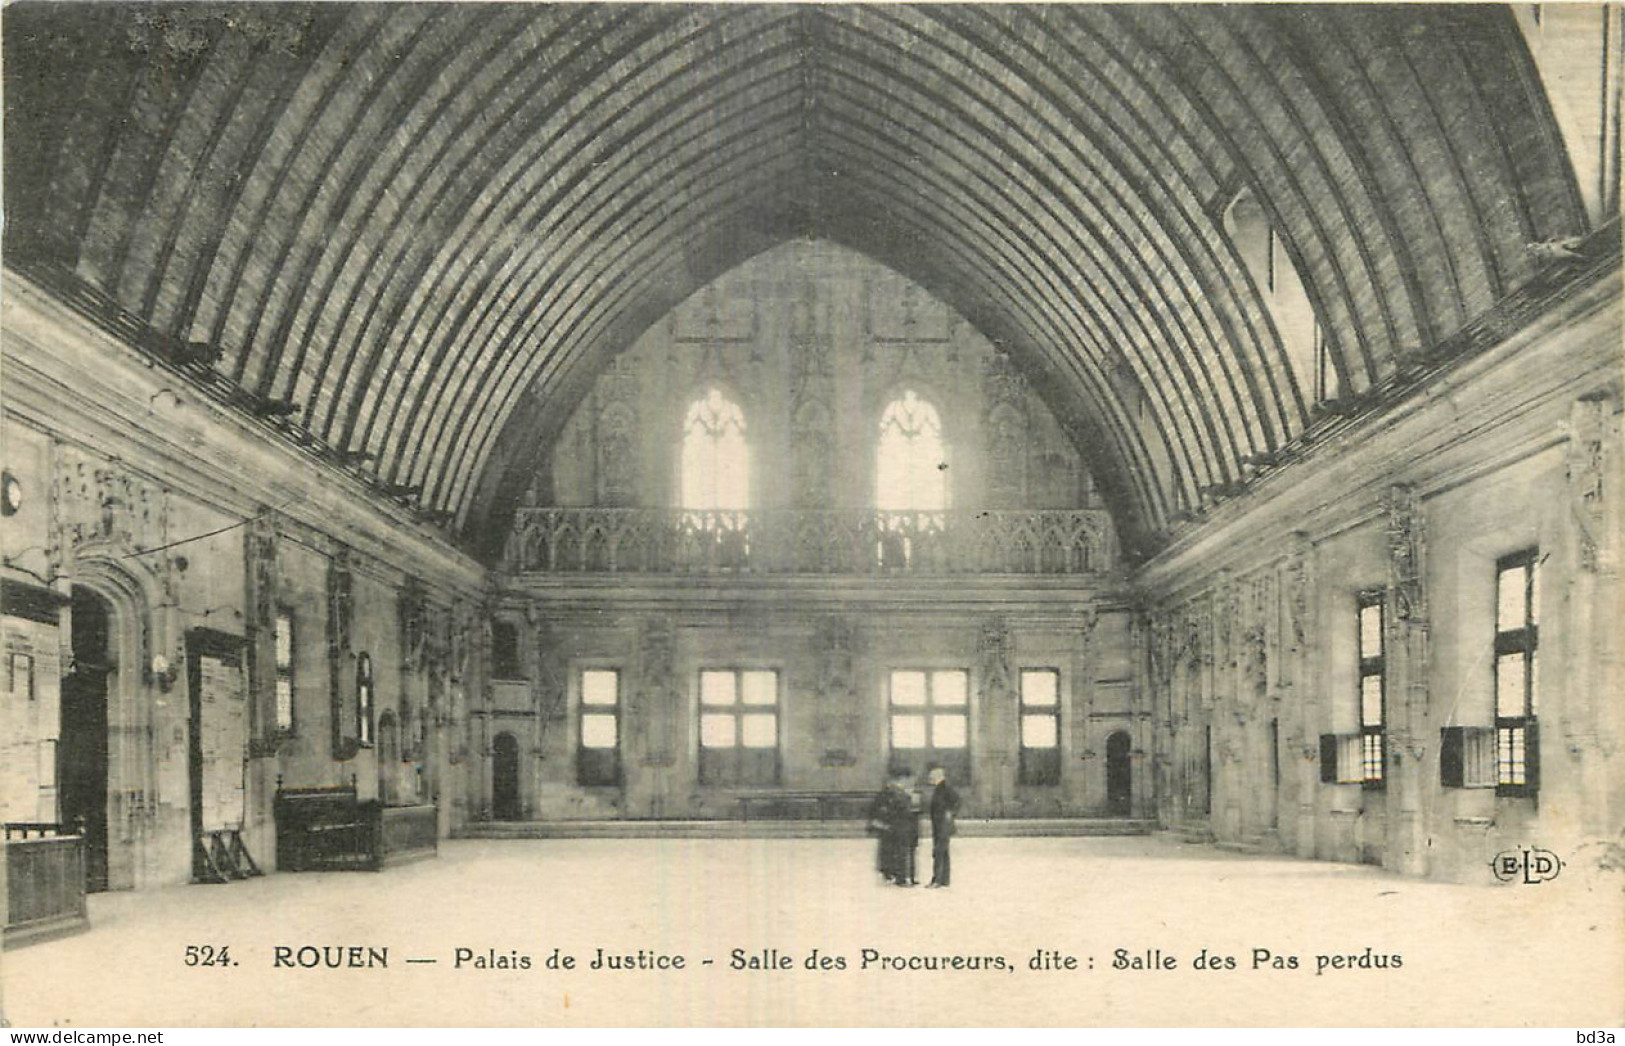 76 - ROUEN - PALAIS DE JUSTICE - SALLE DES PROMENEURS - Rouen